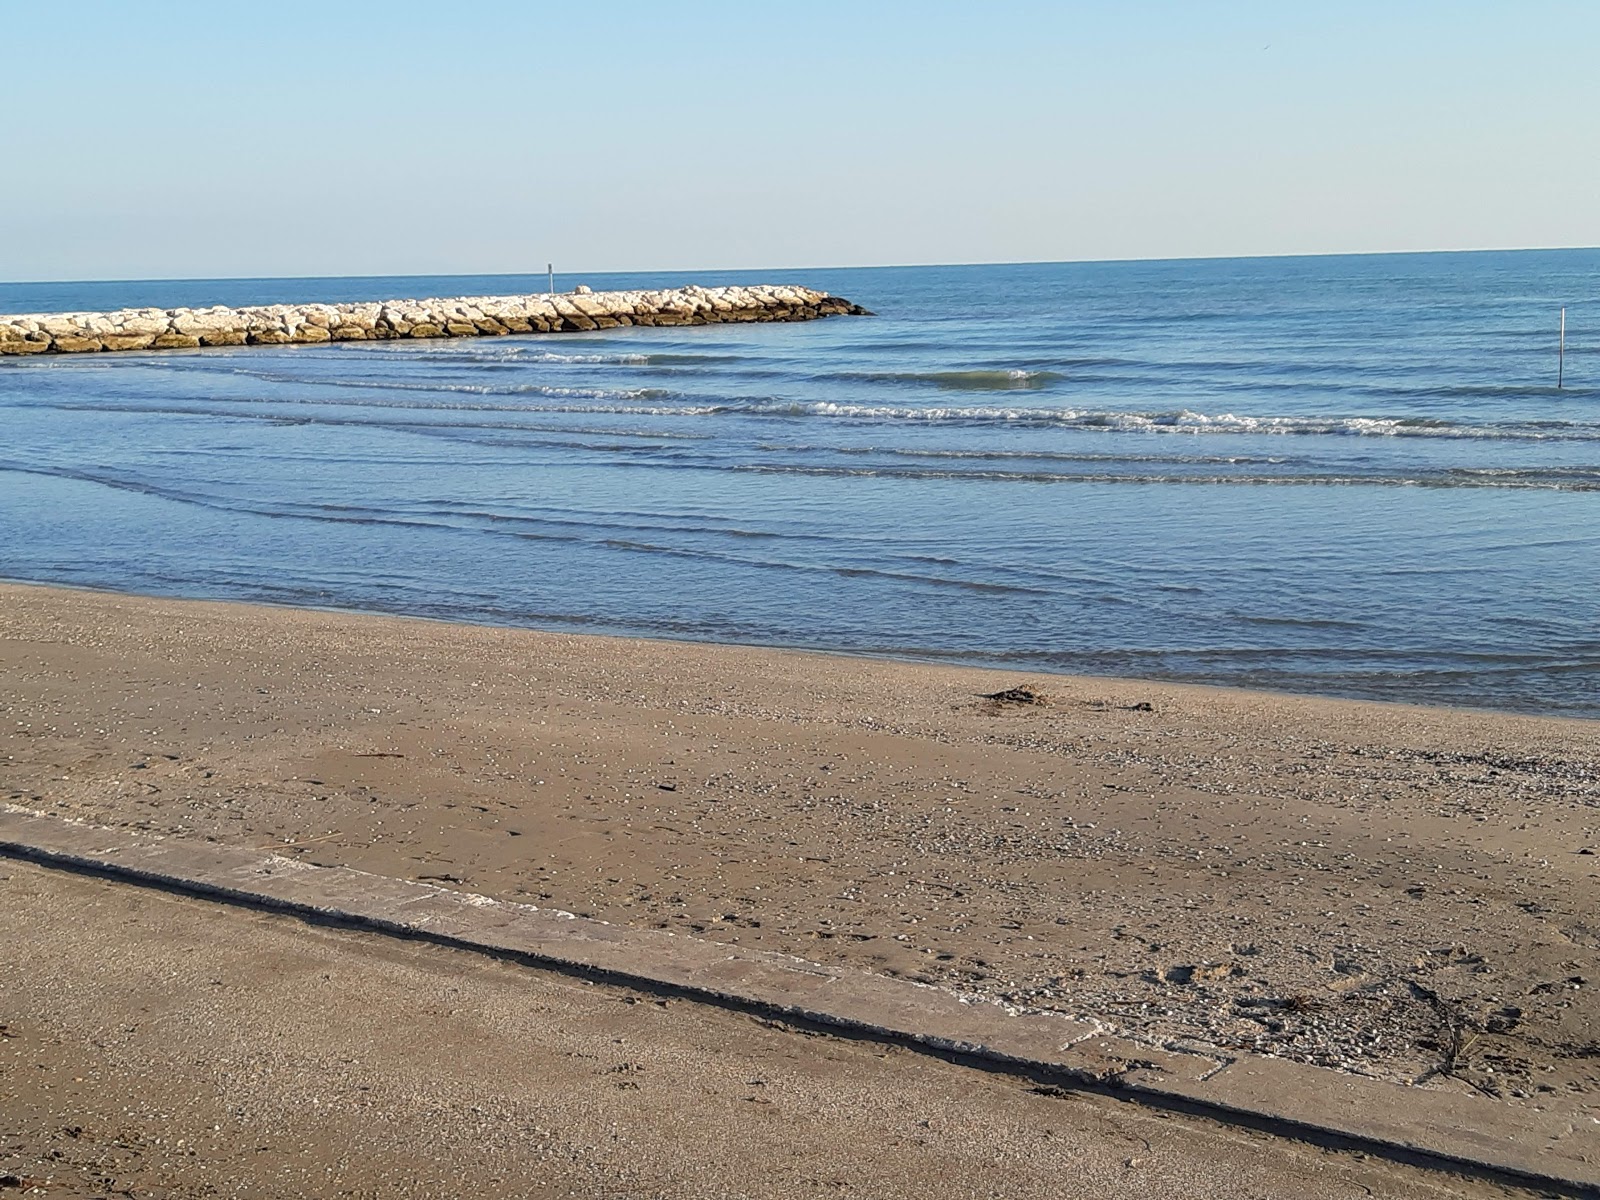 Foto de Spiaggia di Caorle - lugar popular entre los conocedores del relax